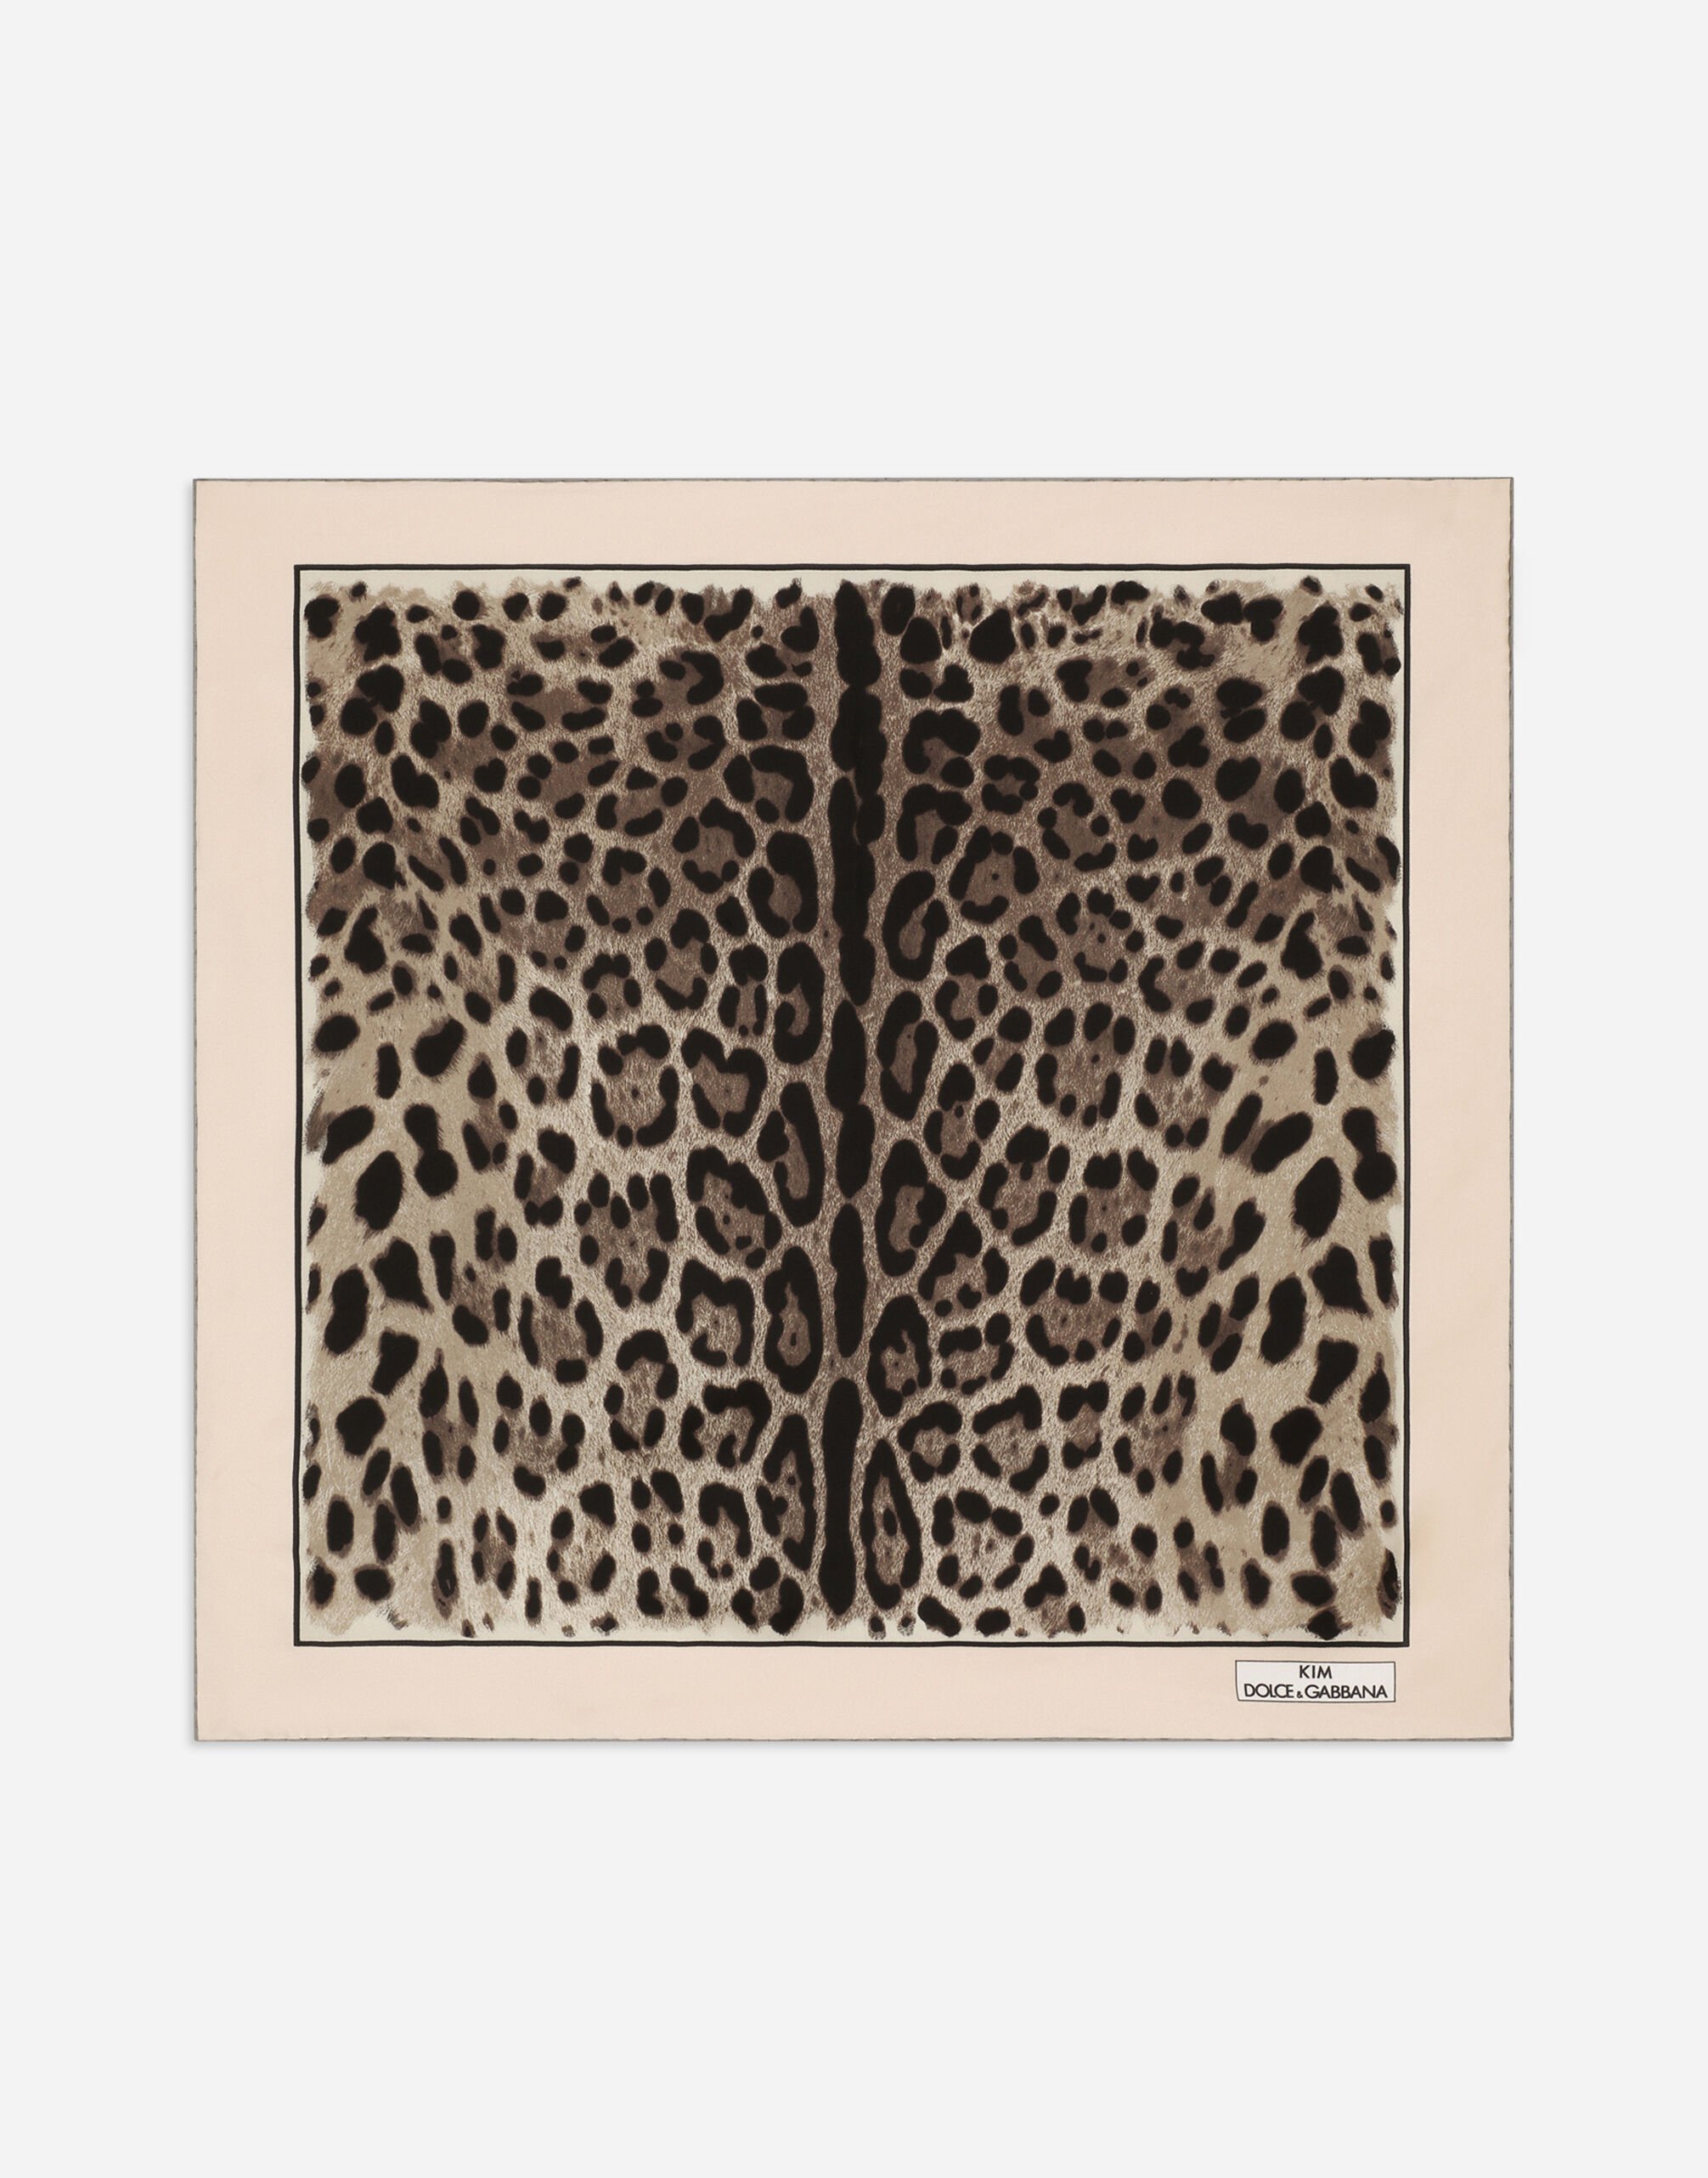 Dolce & Gabbana KIM DOLCE&GABBANA Fular 70x70 de sarga con estampado de leopardo Estampado Animalier BE1446AM568